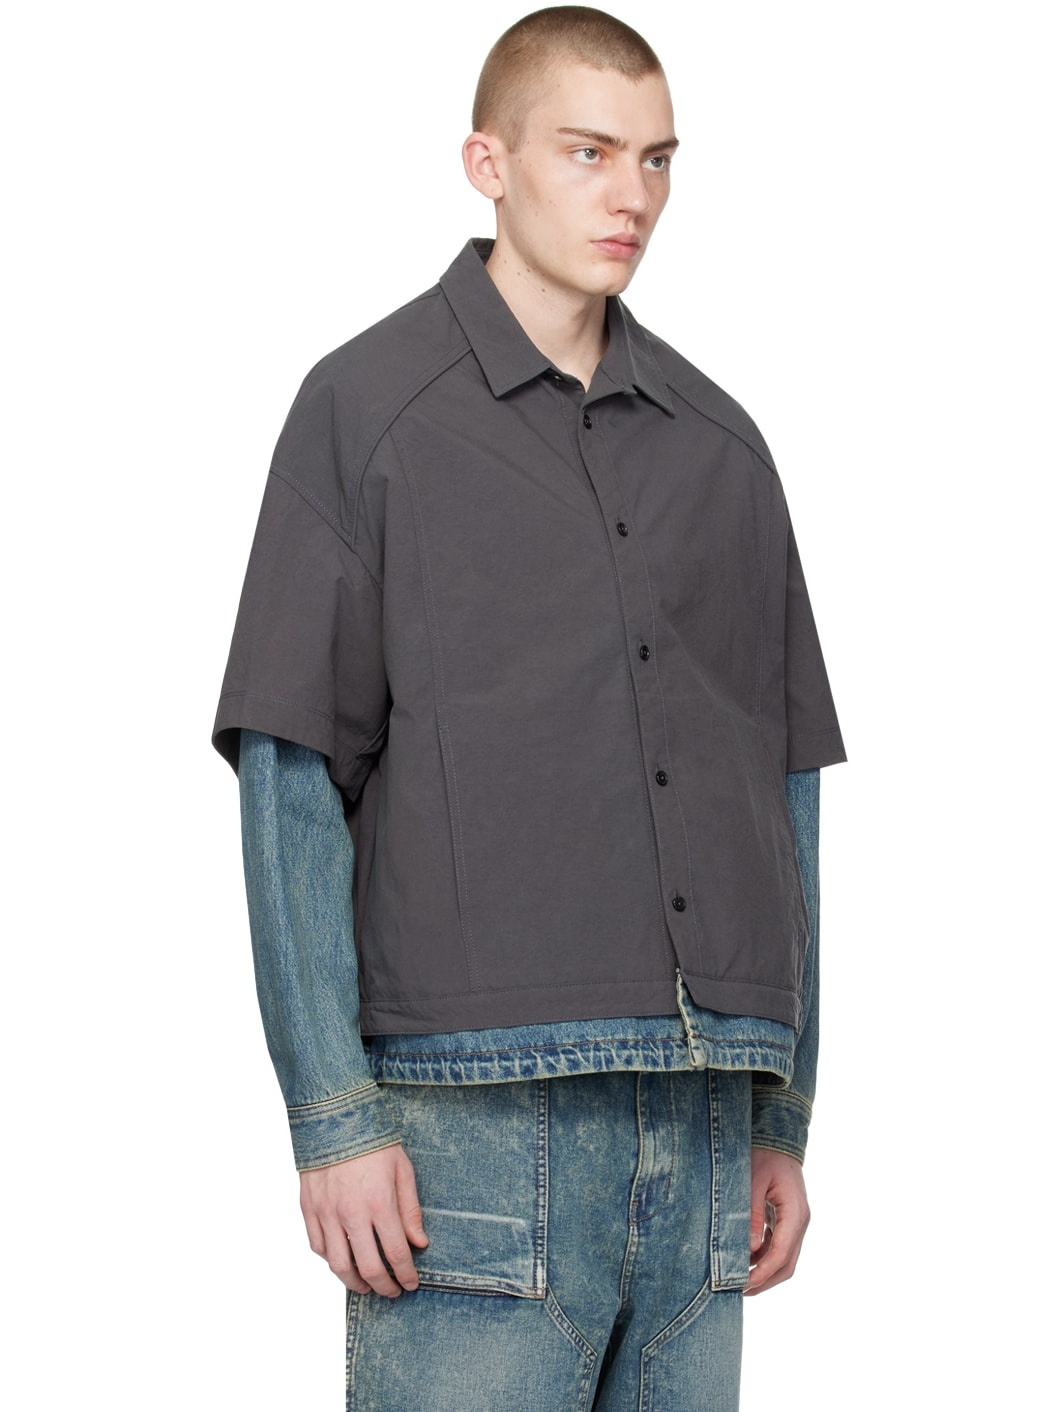 Gray & Indigo Layered Shirt - 2